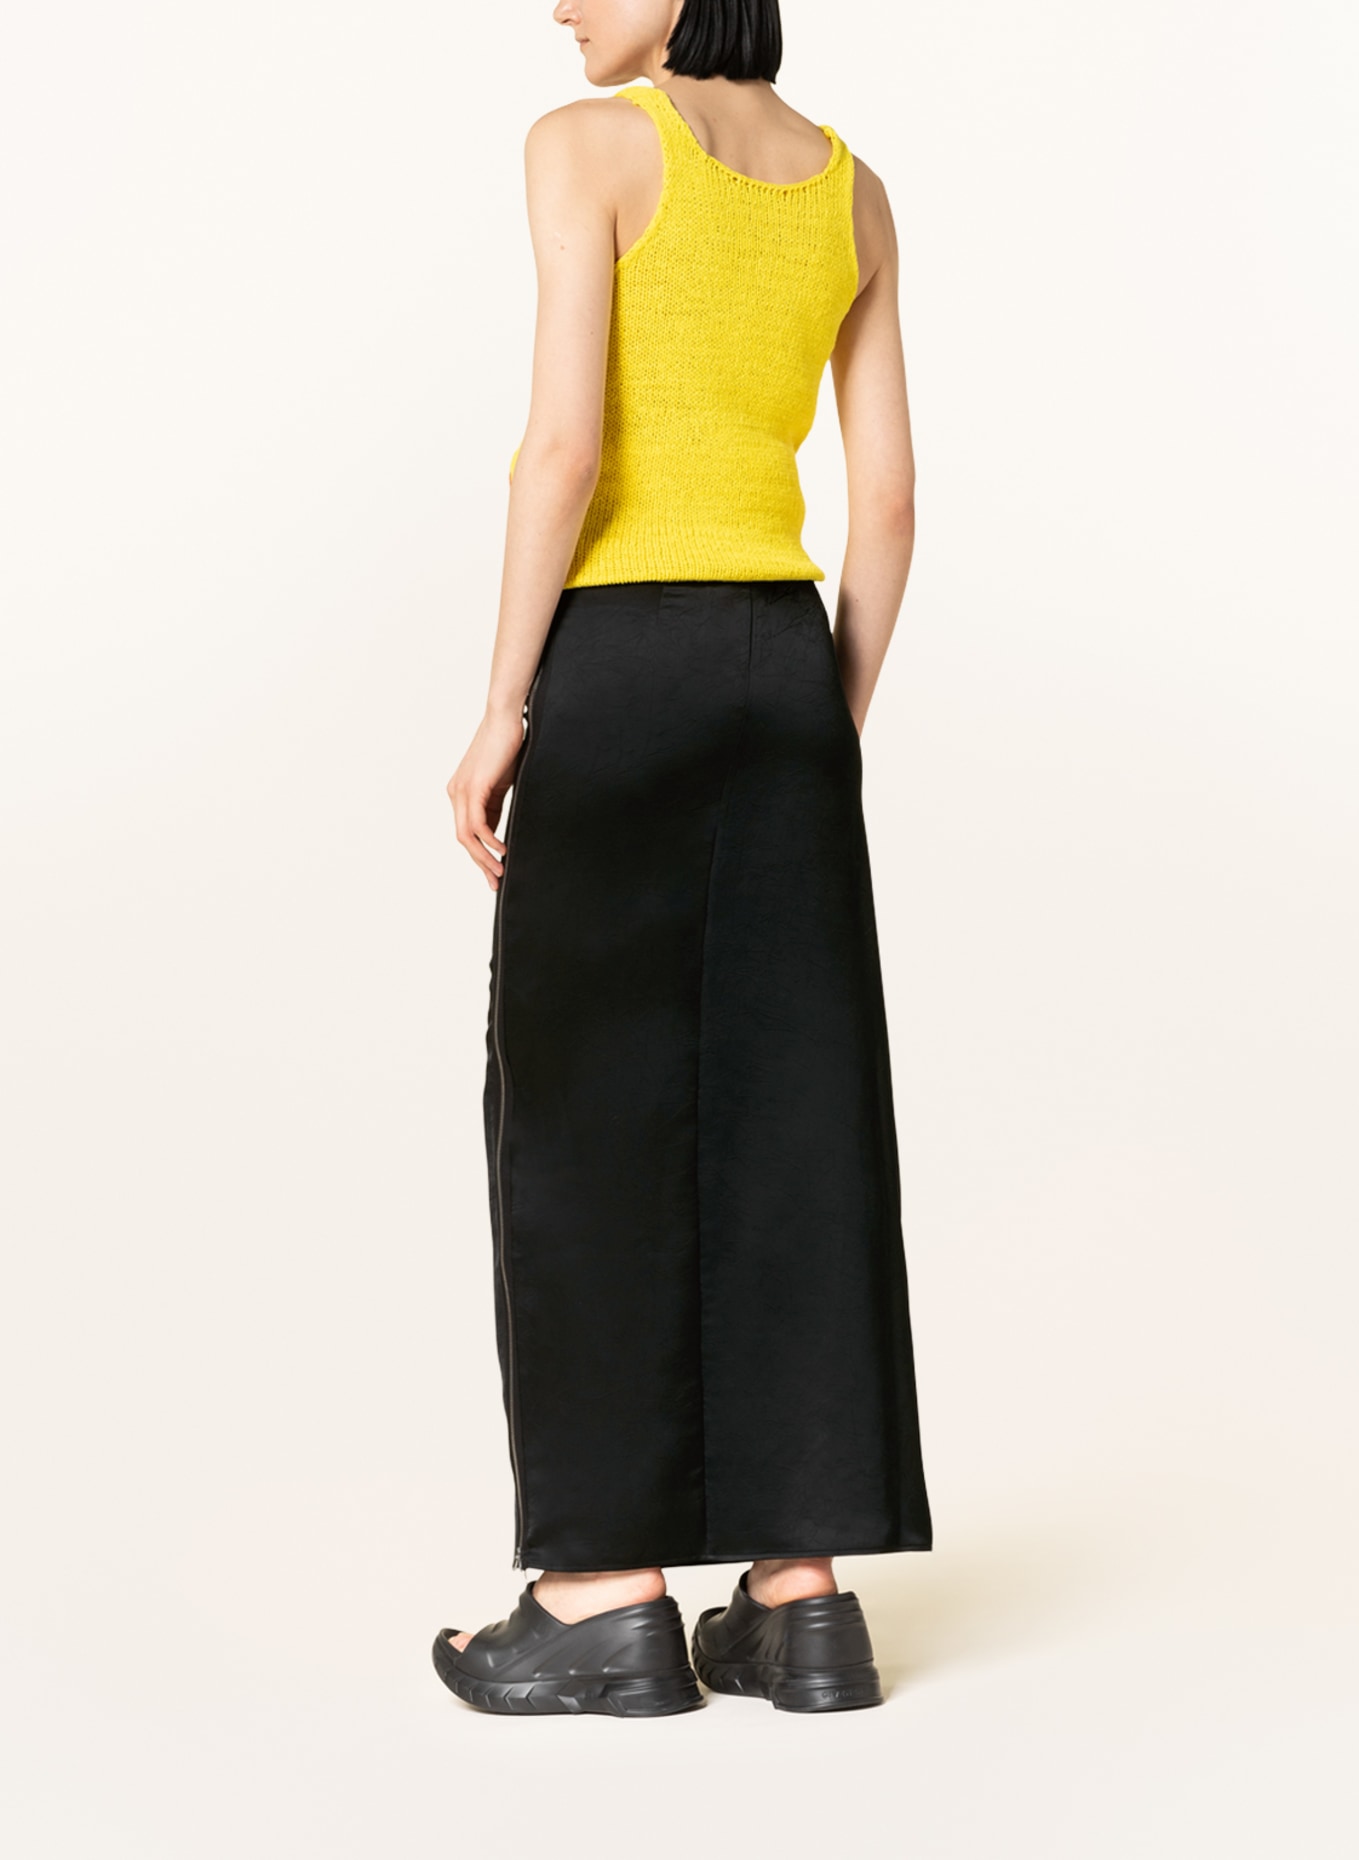 JW ANDERSON Satin skirt, Color: BLACK (Image 3)